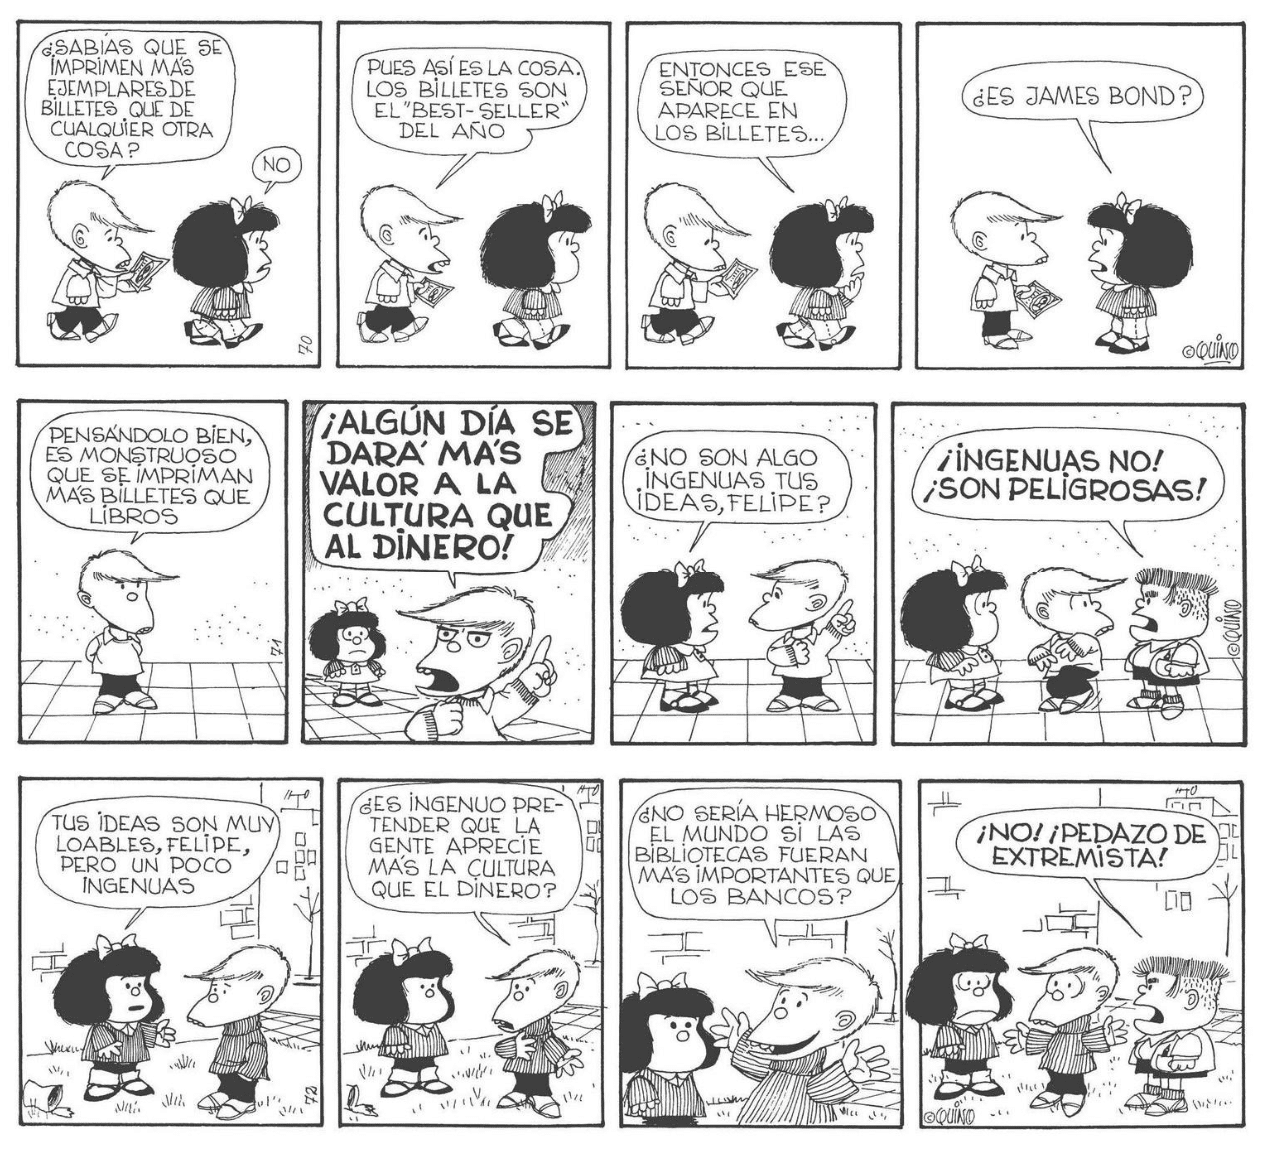 Los invidentes también podrán disfrutar de los cómic de Mafalda, ¡por fin en braille! 24